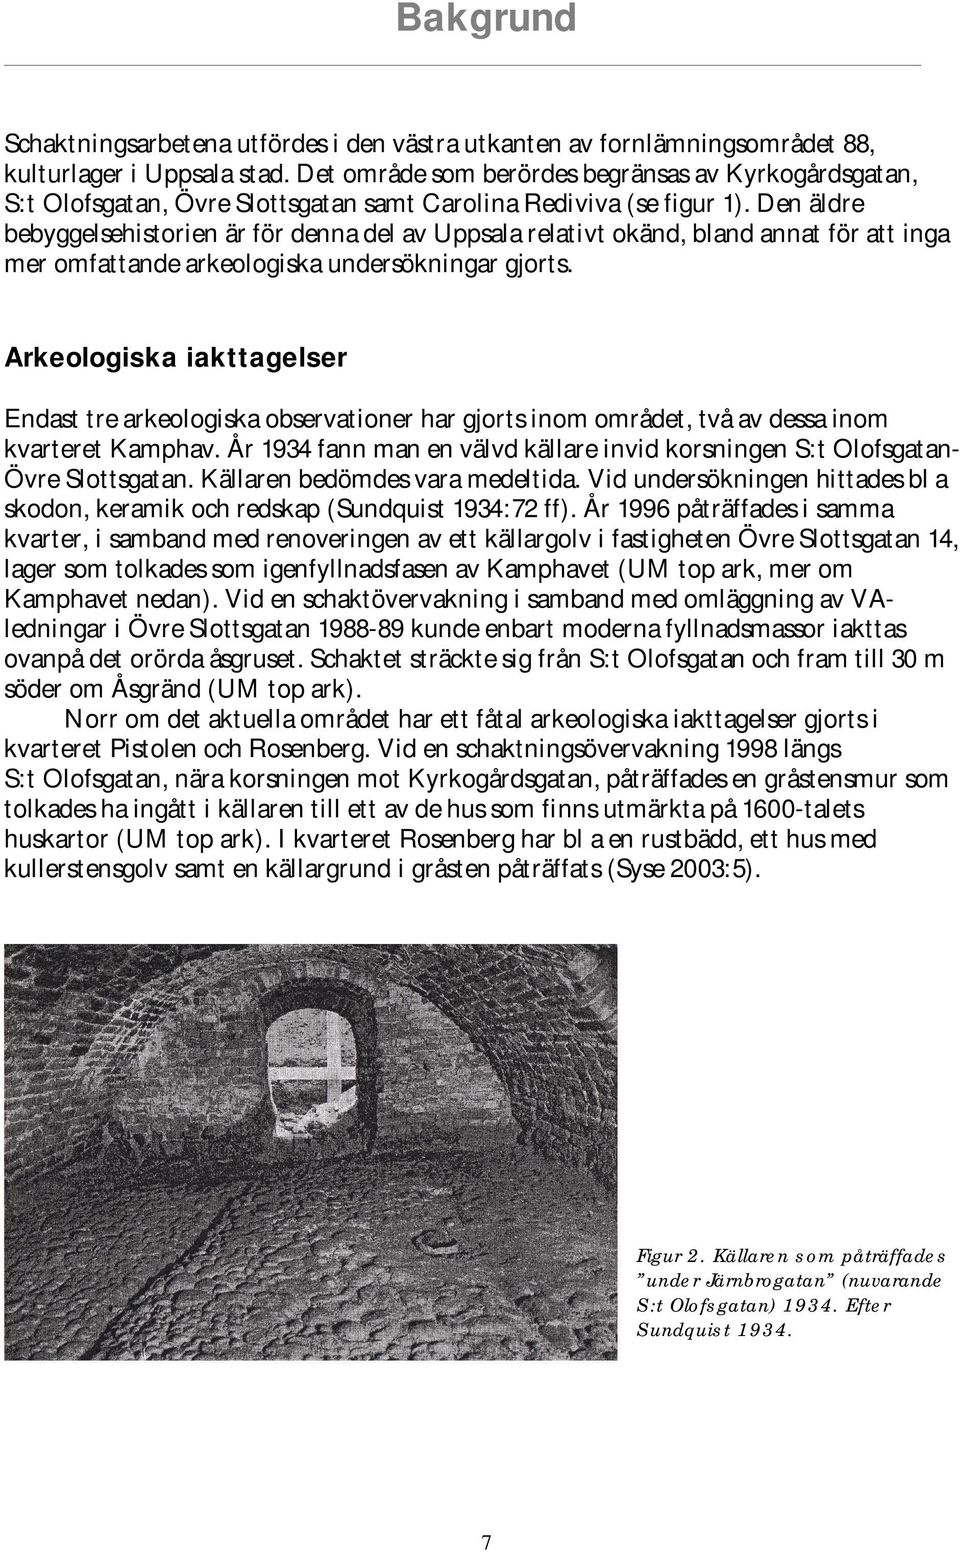 Den äldre bebyggelsehistorien är för denna del av Uppsala relativt okänd, bland annat för att inga mer omfattande arkeologiska undersökningar gjorts.